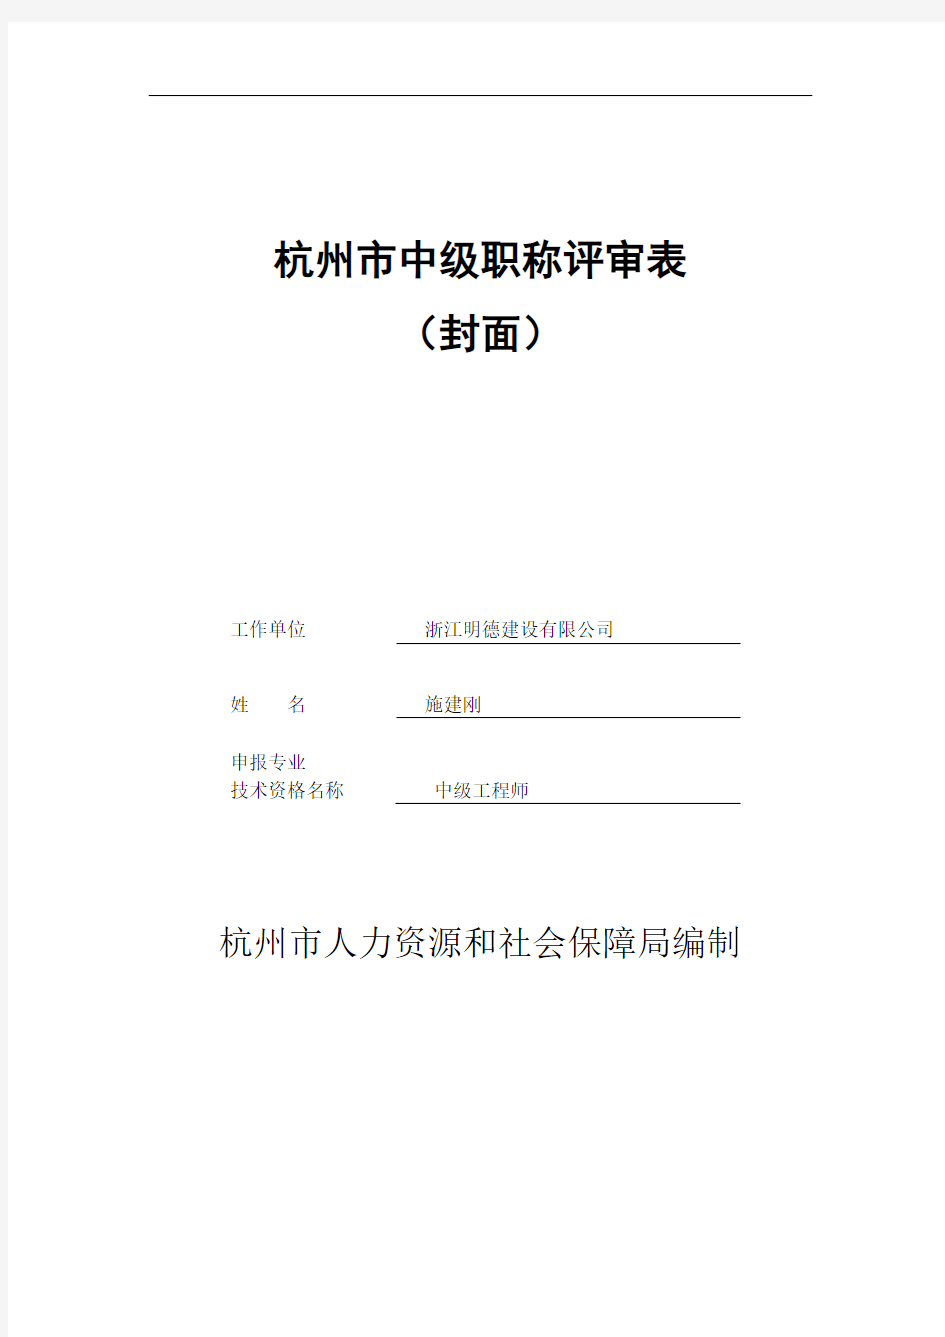 杭州市中级职称评审表—非网填报部分含评审表封面和填表说明